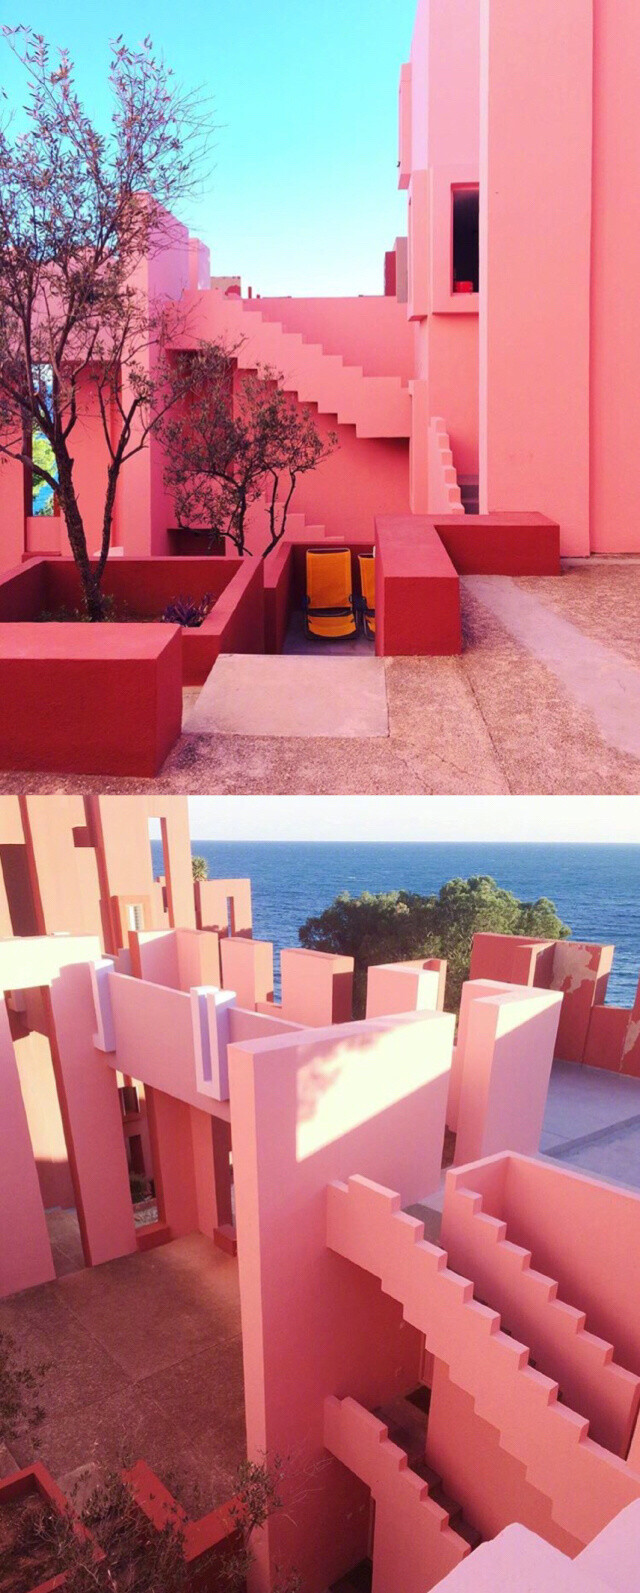 西班牙muralla roja ,粉色蓝色的几何建筑,如同现实版"纪念碑谷"